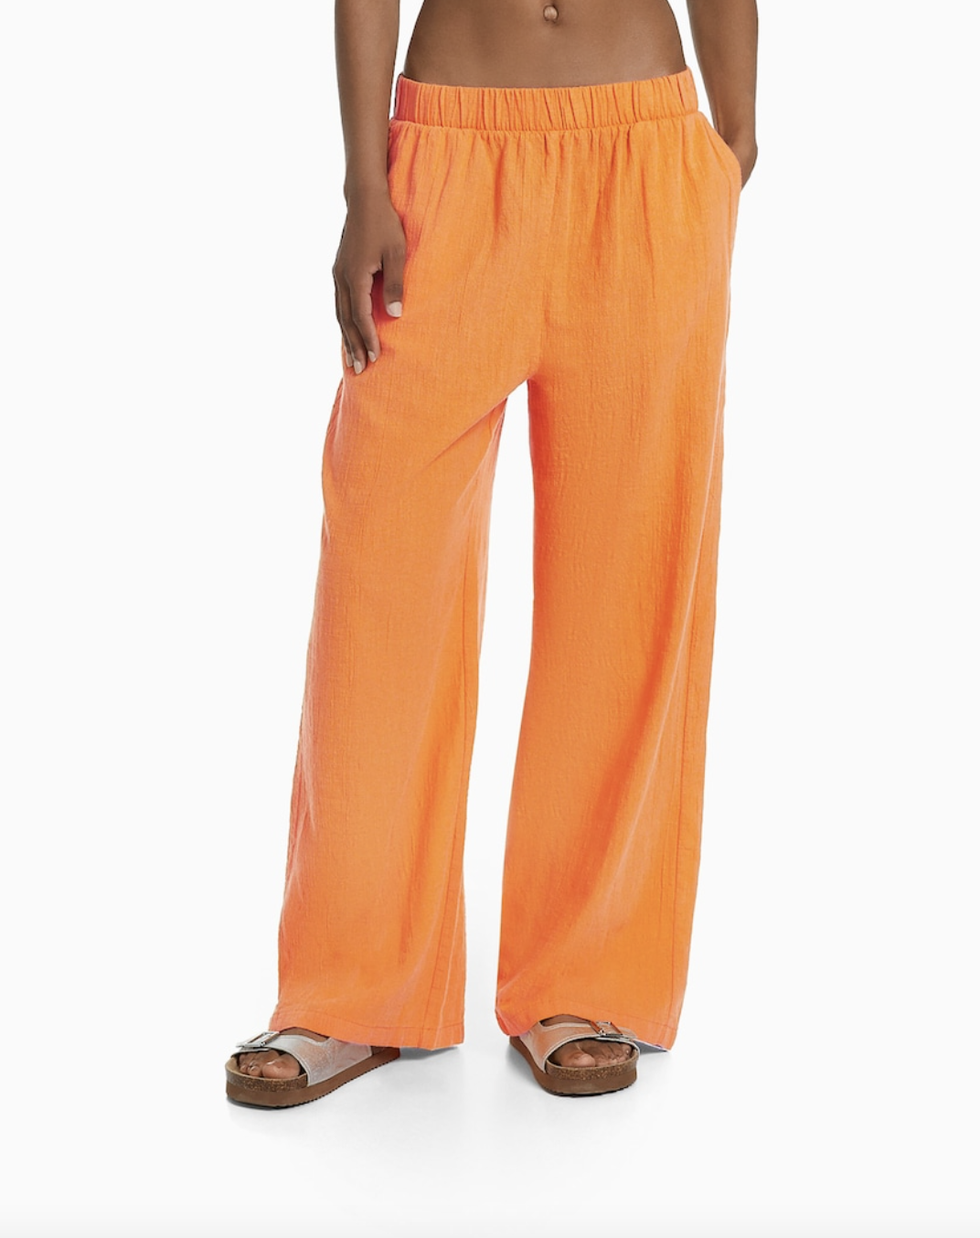 Los pantalones naranjas de Bershka de 22€ que potencian el bronceado